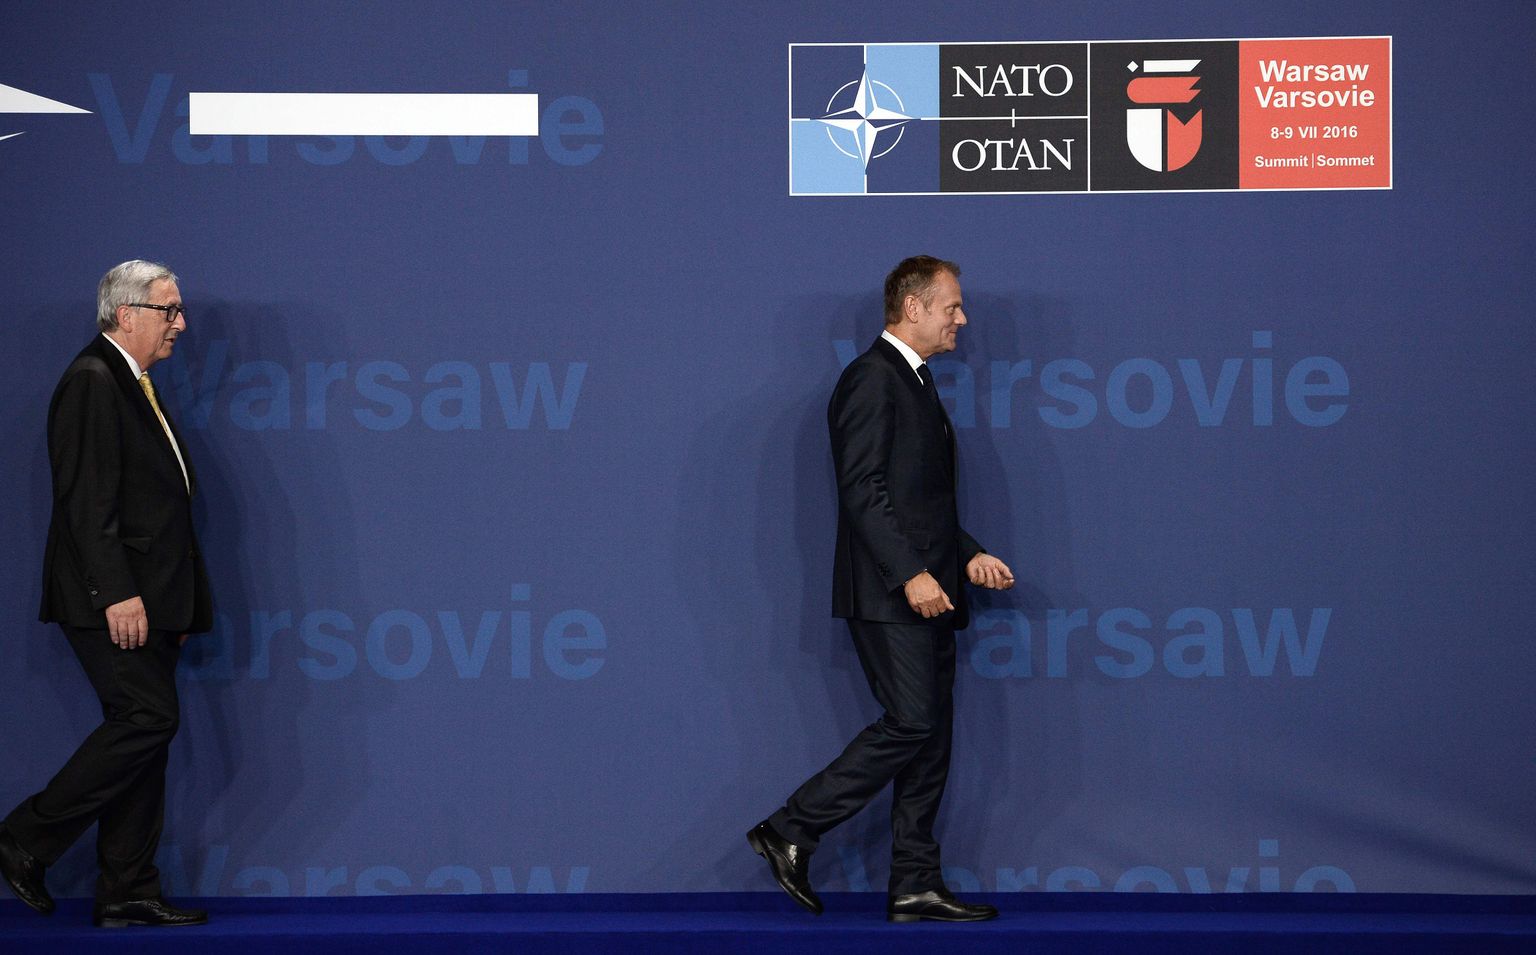 Euroopa Komisjoni president Jean-Claude Juncker ja liidunõukogu juht Donald Tusk suundusid NATO tippkohtumisele ilmselgelt entusiastliku sammuga.